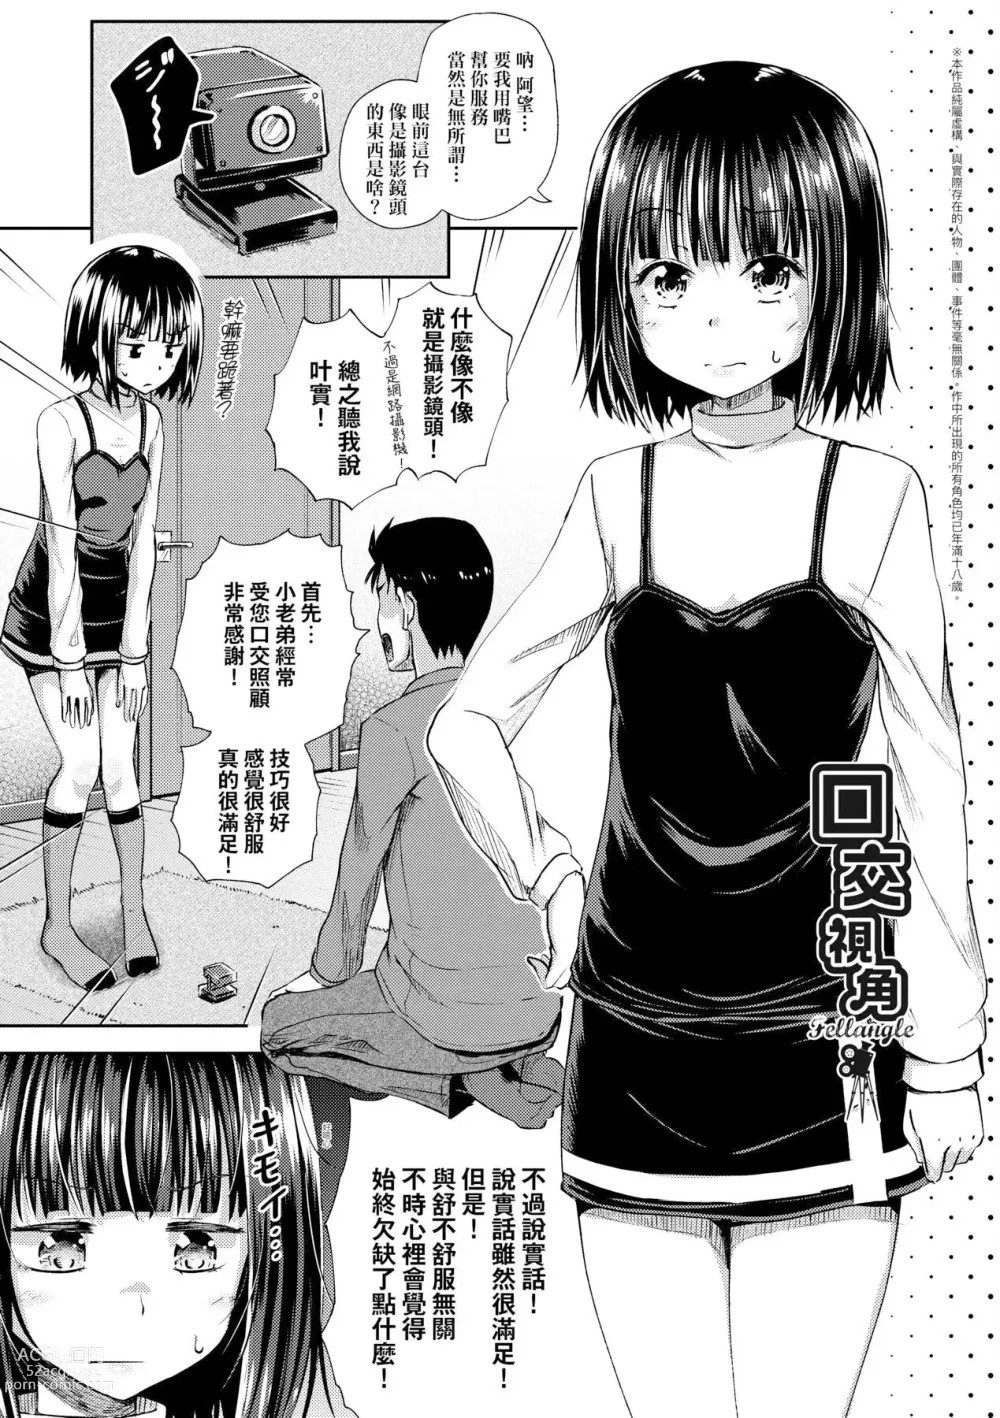 Page 185 of manga 心生遐想催眠暗示APP♡妳與我與她 (decensored)